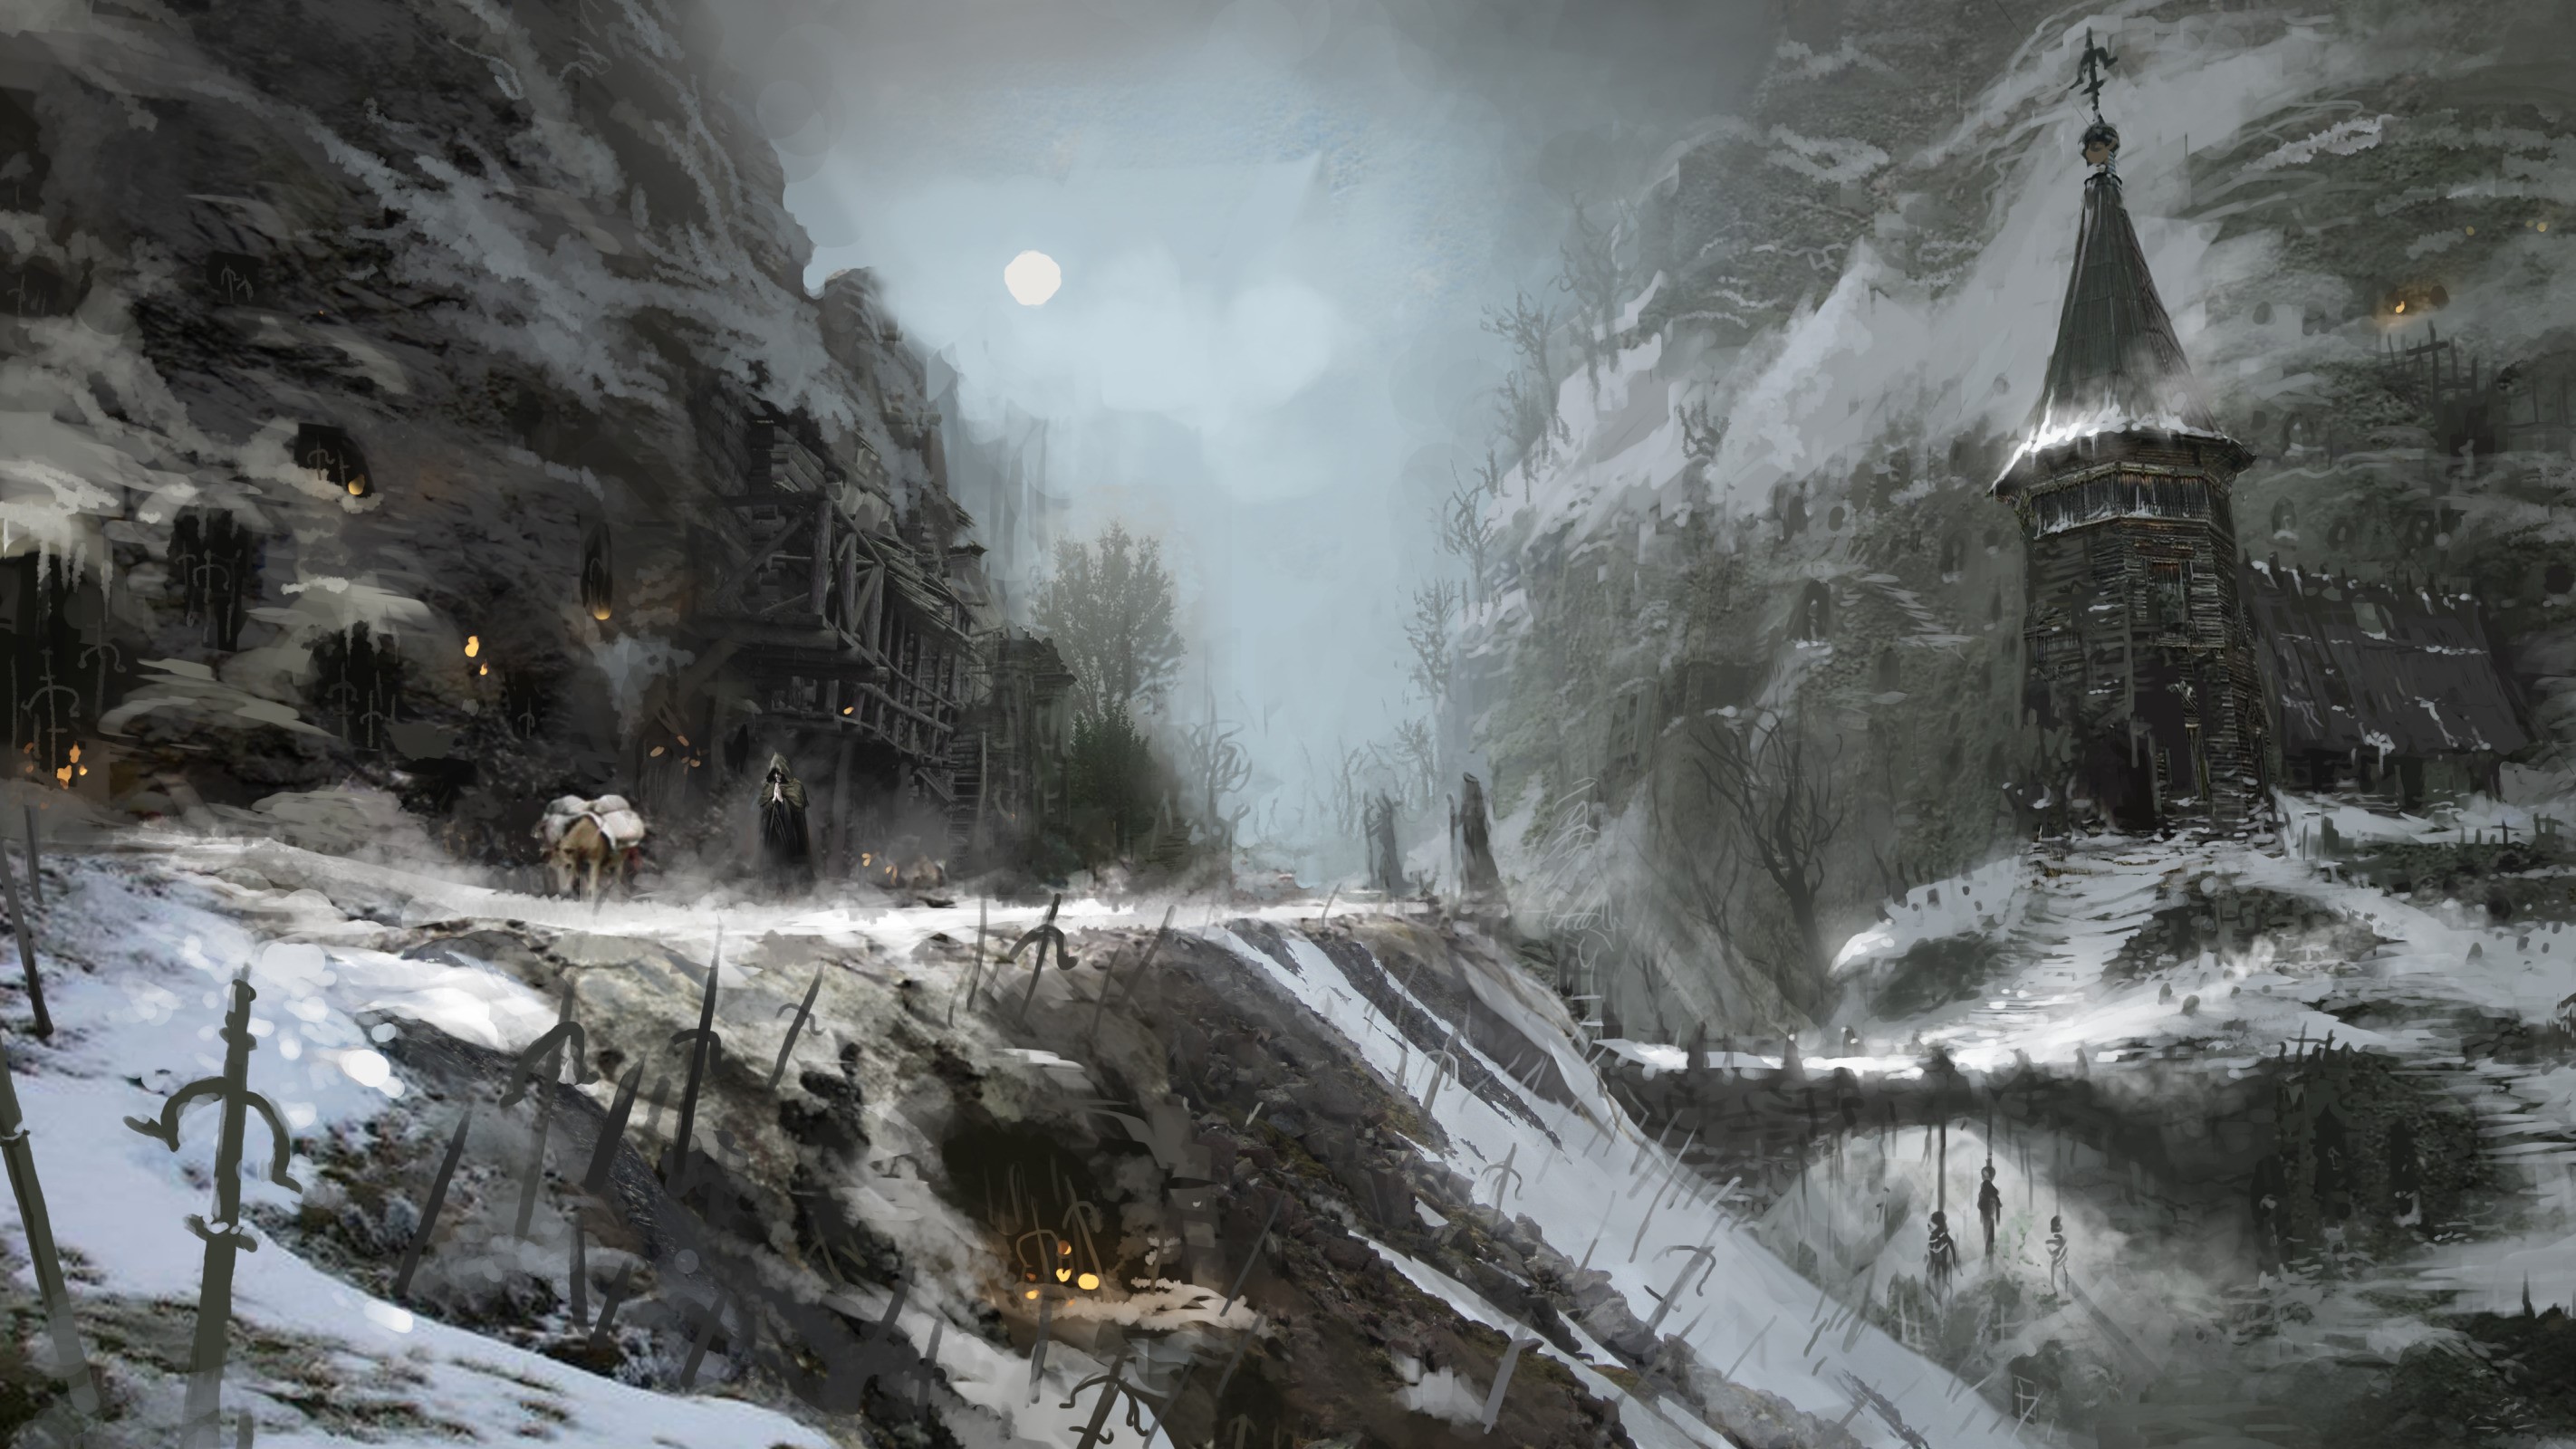 Diablo Diablo IV Video Games Full Moon Artwork Video Game Art Sword Snow Moon Mist Sky Trees 2844x1600